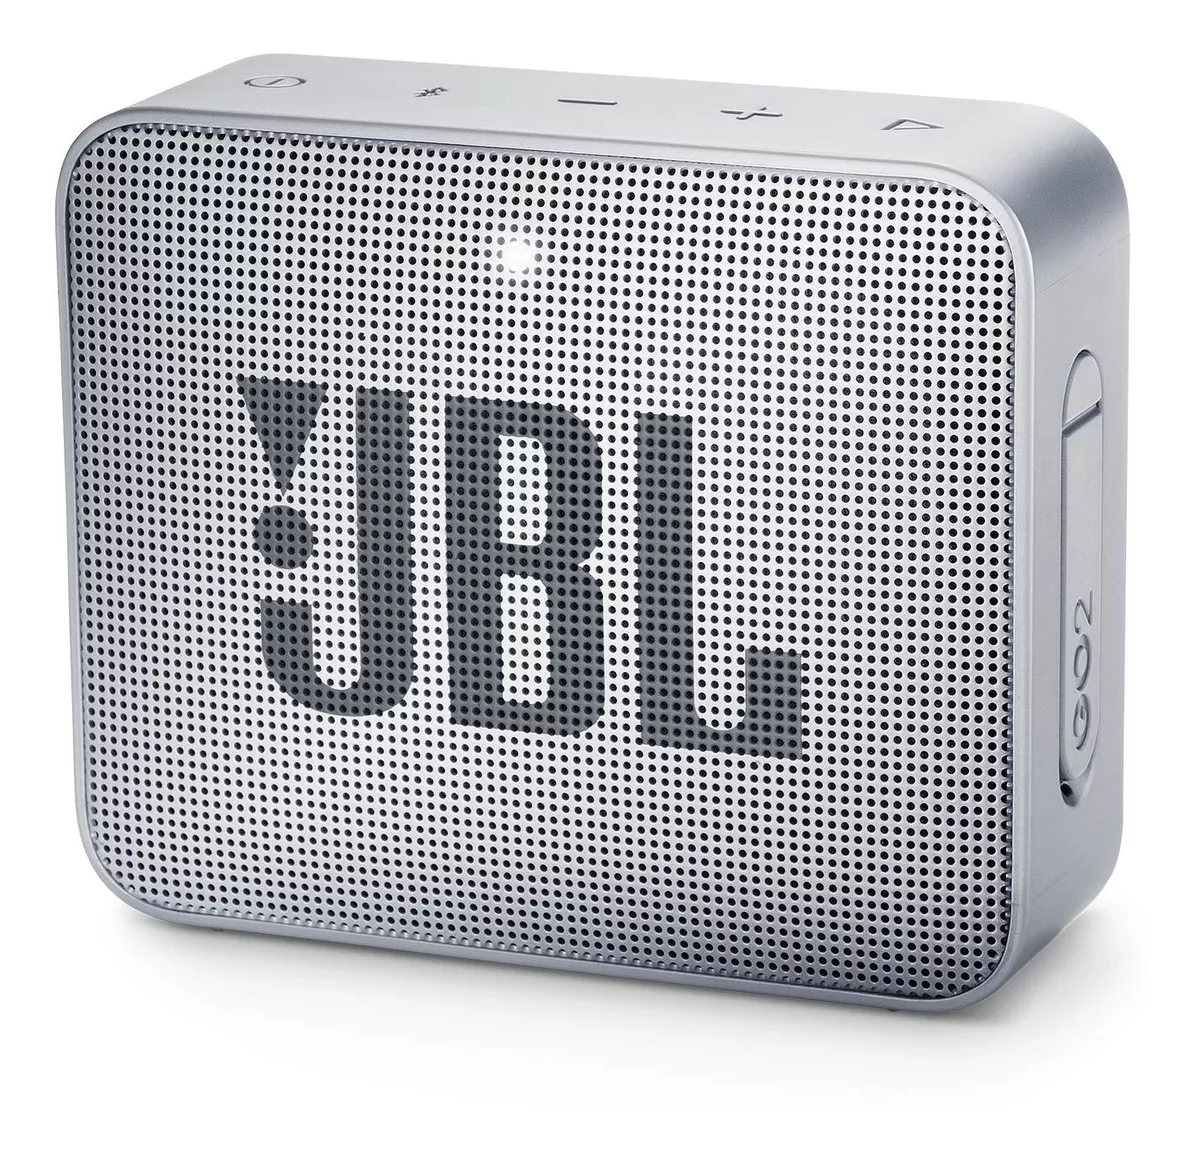 Alto-falante Jbl Go 2 Portátil Com Bluetooth Ash Gray 